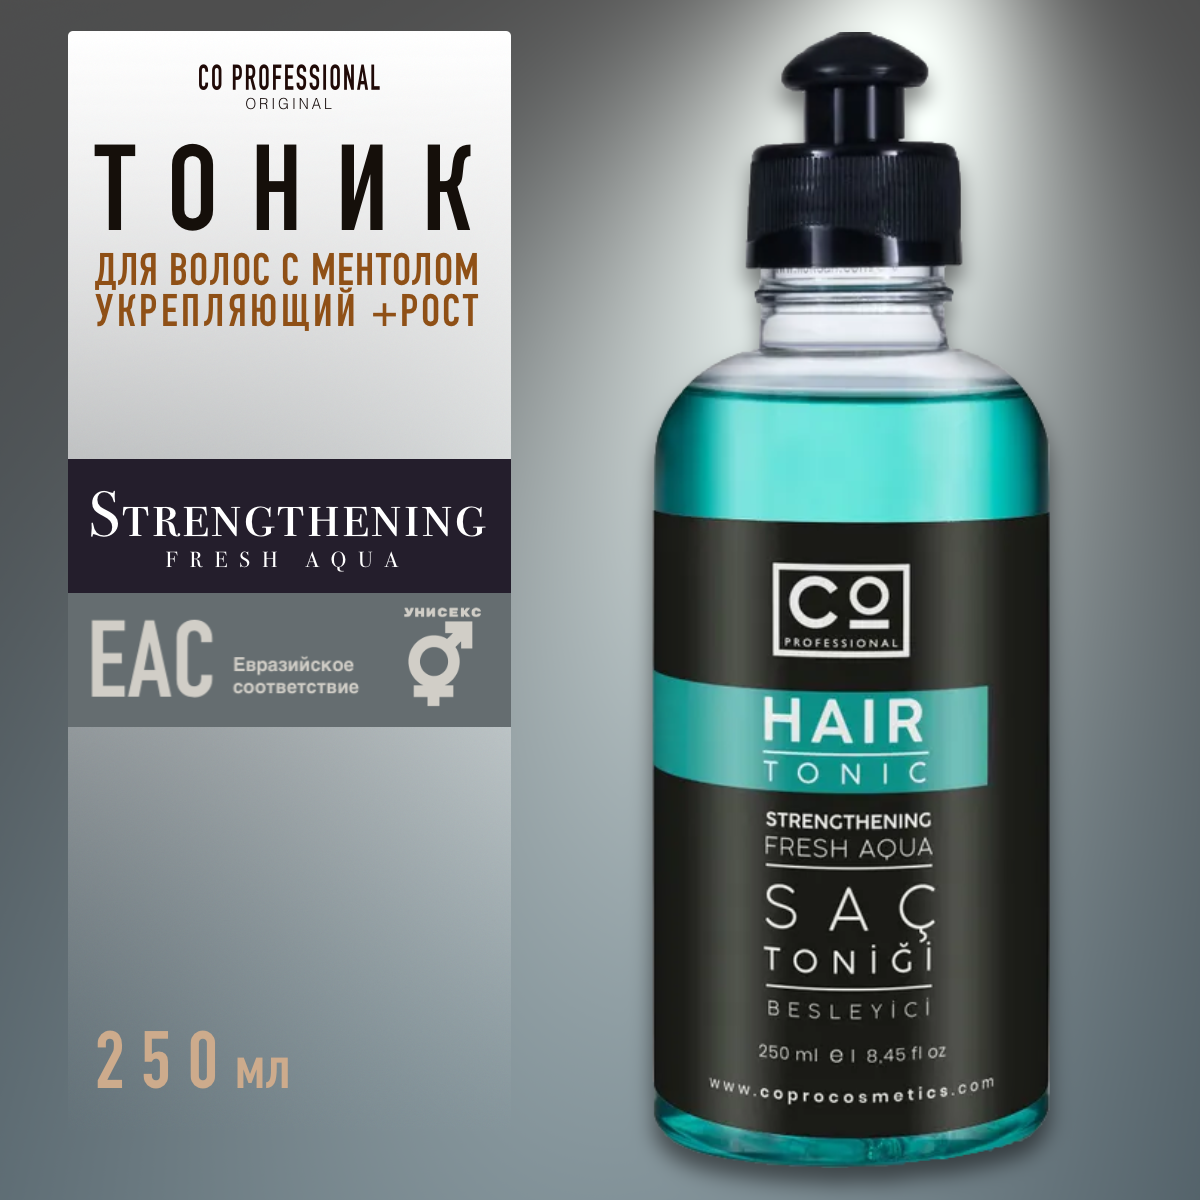 Тоник для волос с ментолом CO PROFESSIONAL Hair Tonic, 250 мл